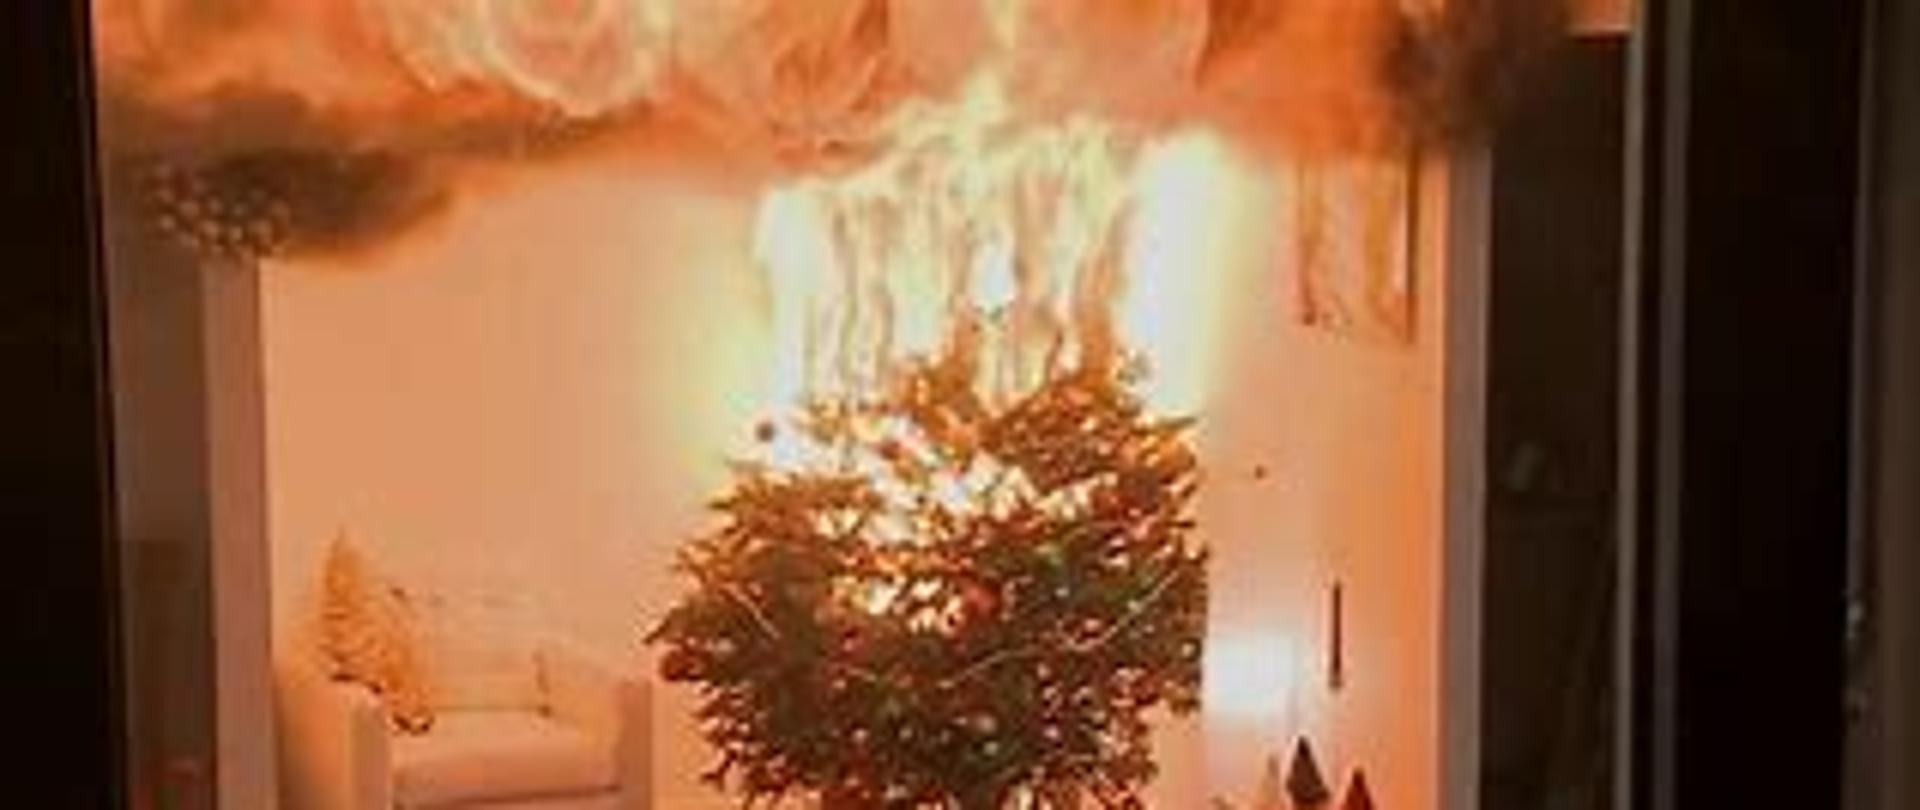 Zdjęcie przedstawia pożar choinki w pokoju